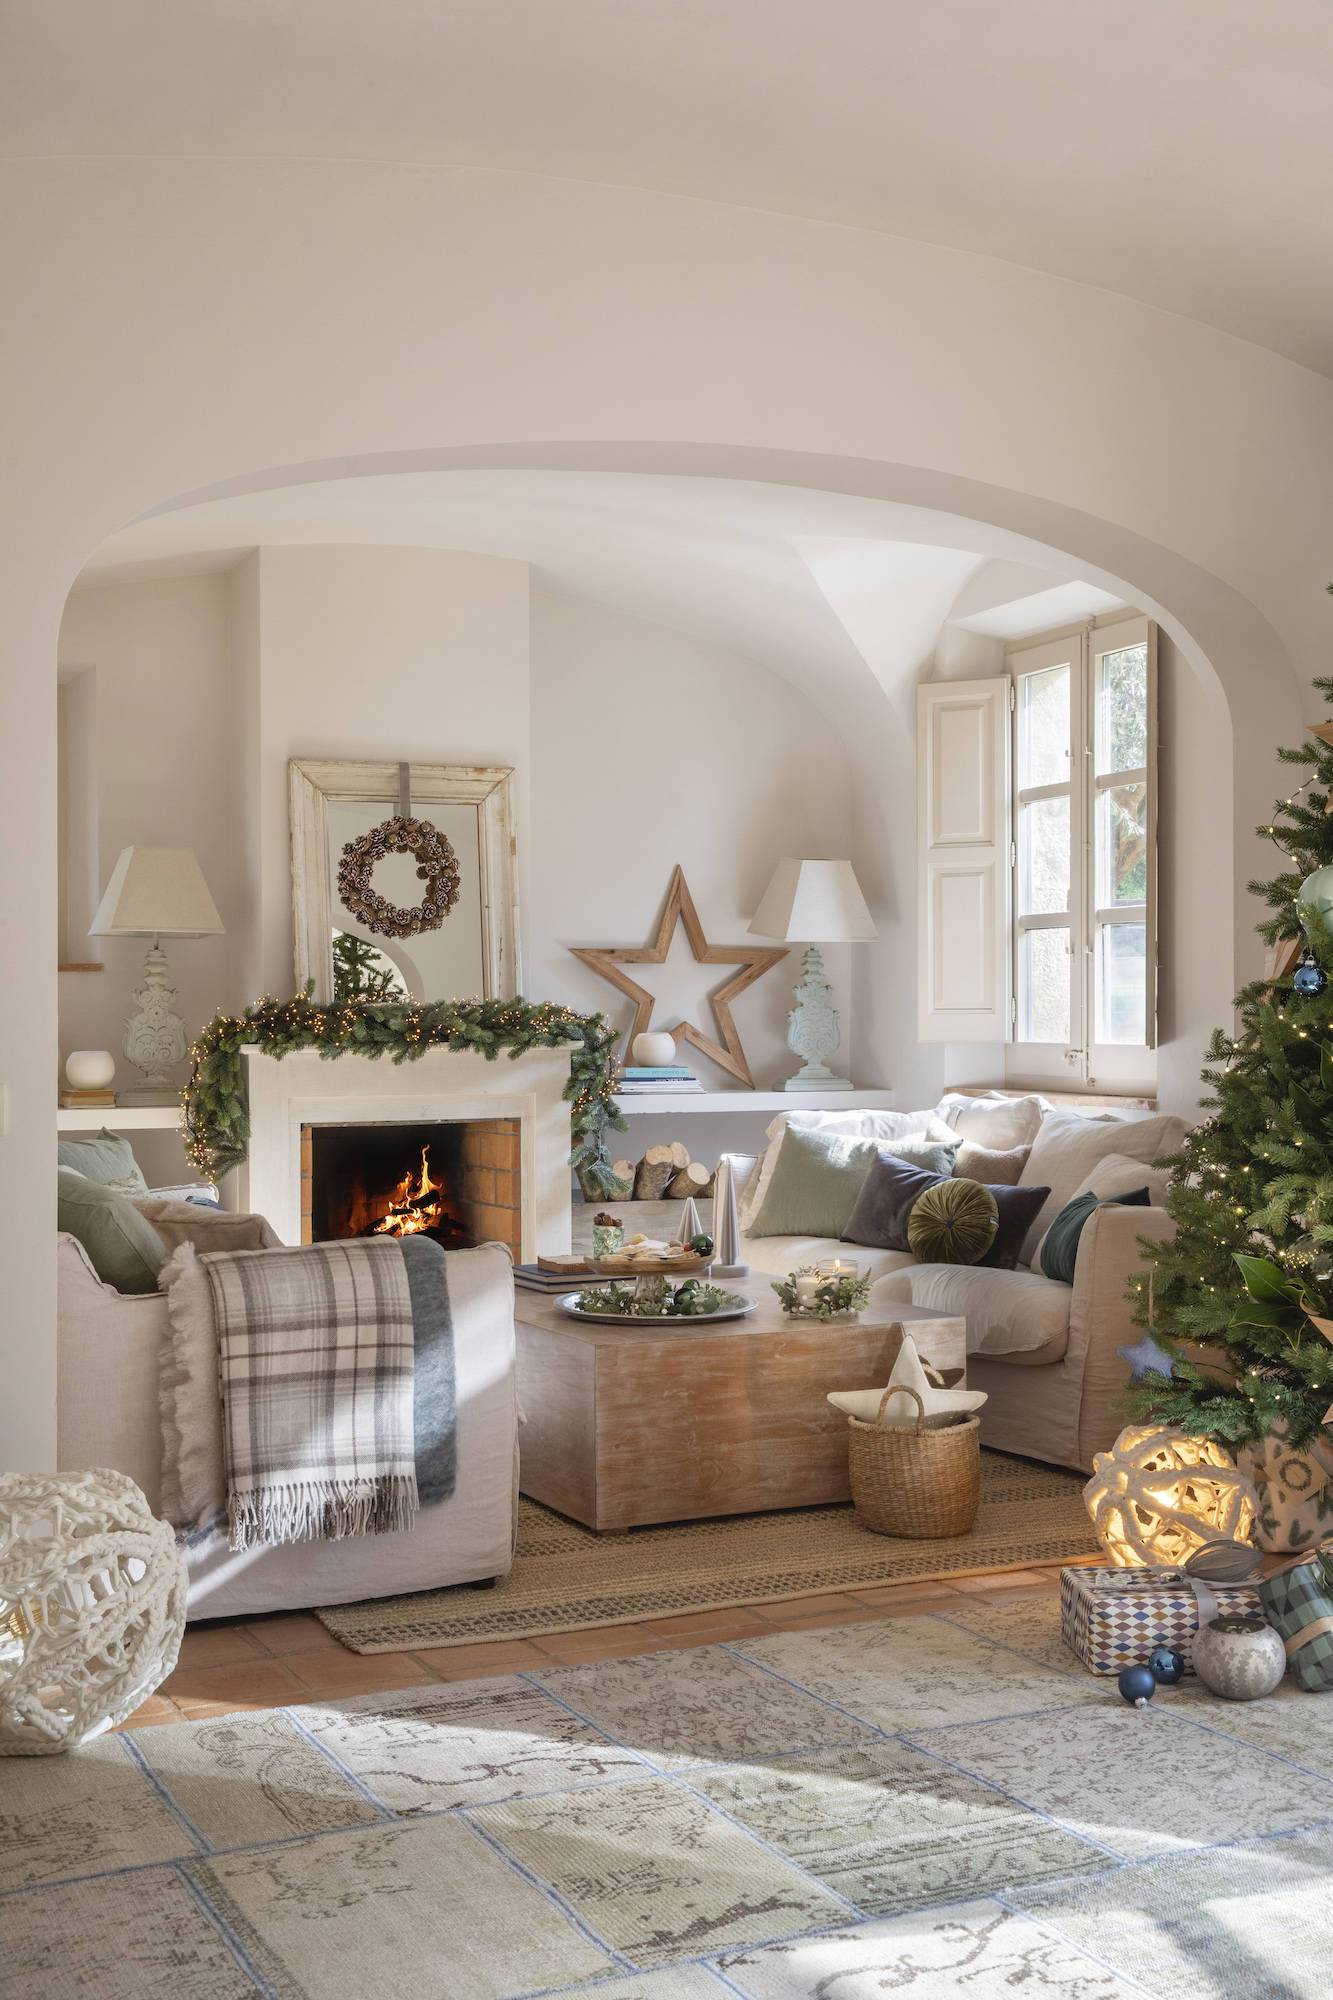 Salón con chimenea decorada de Navidad.